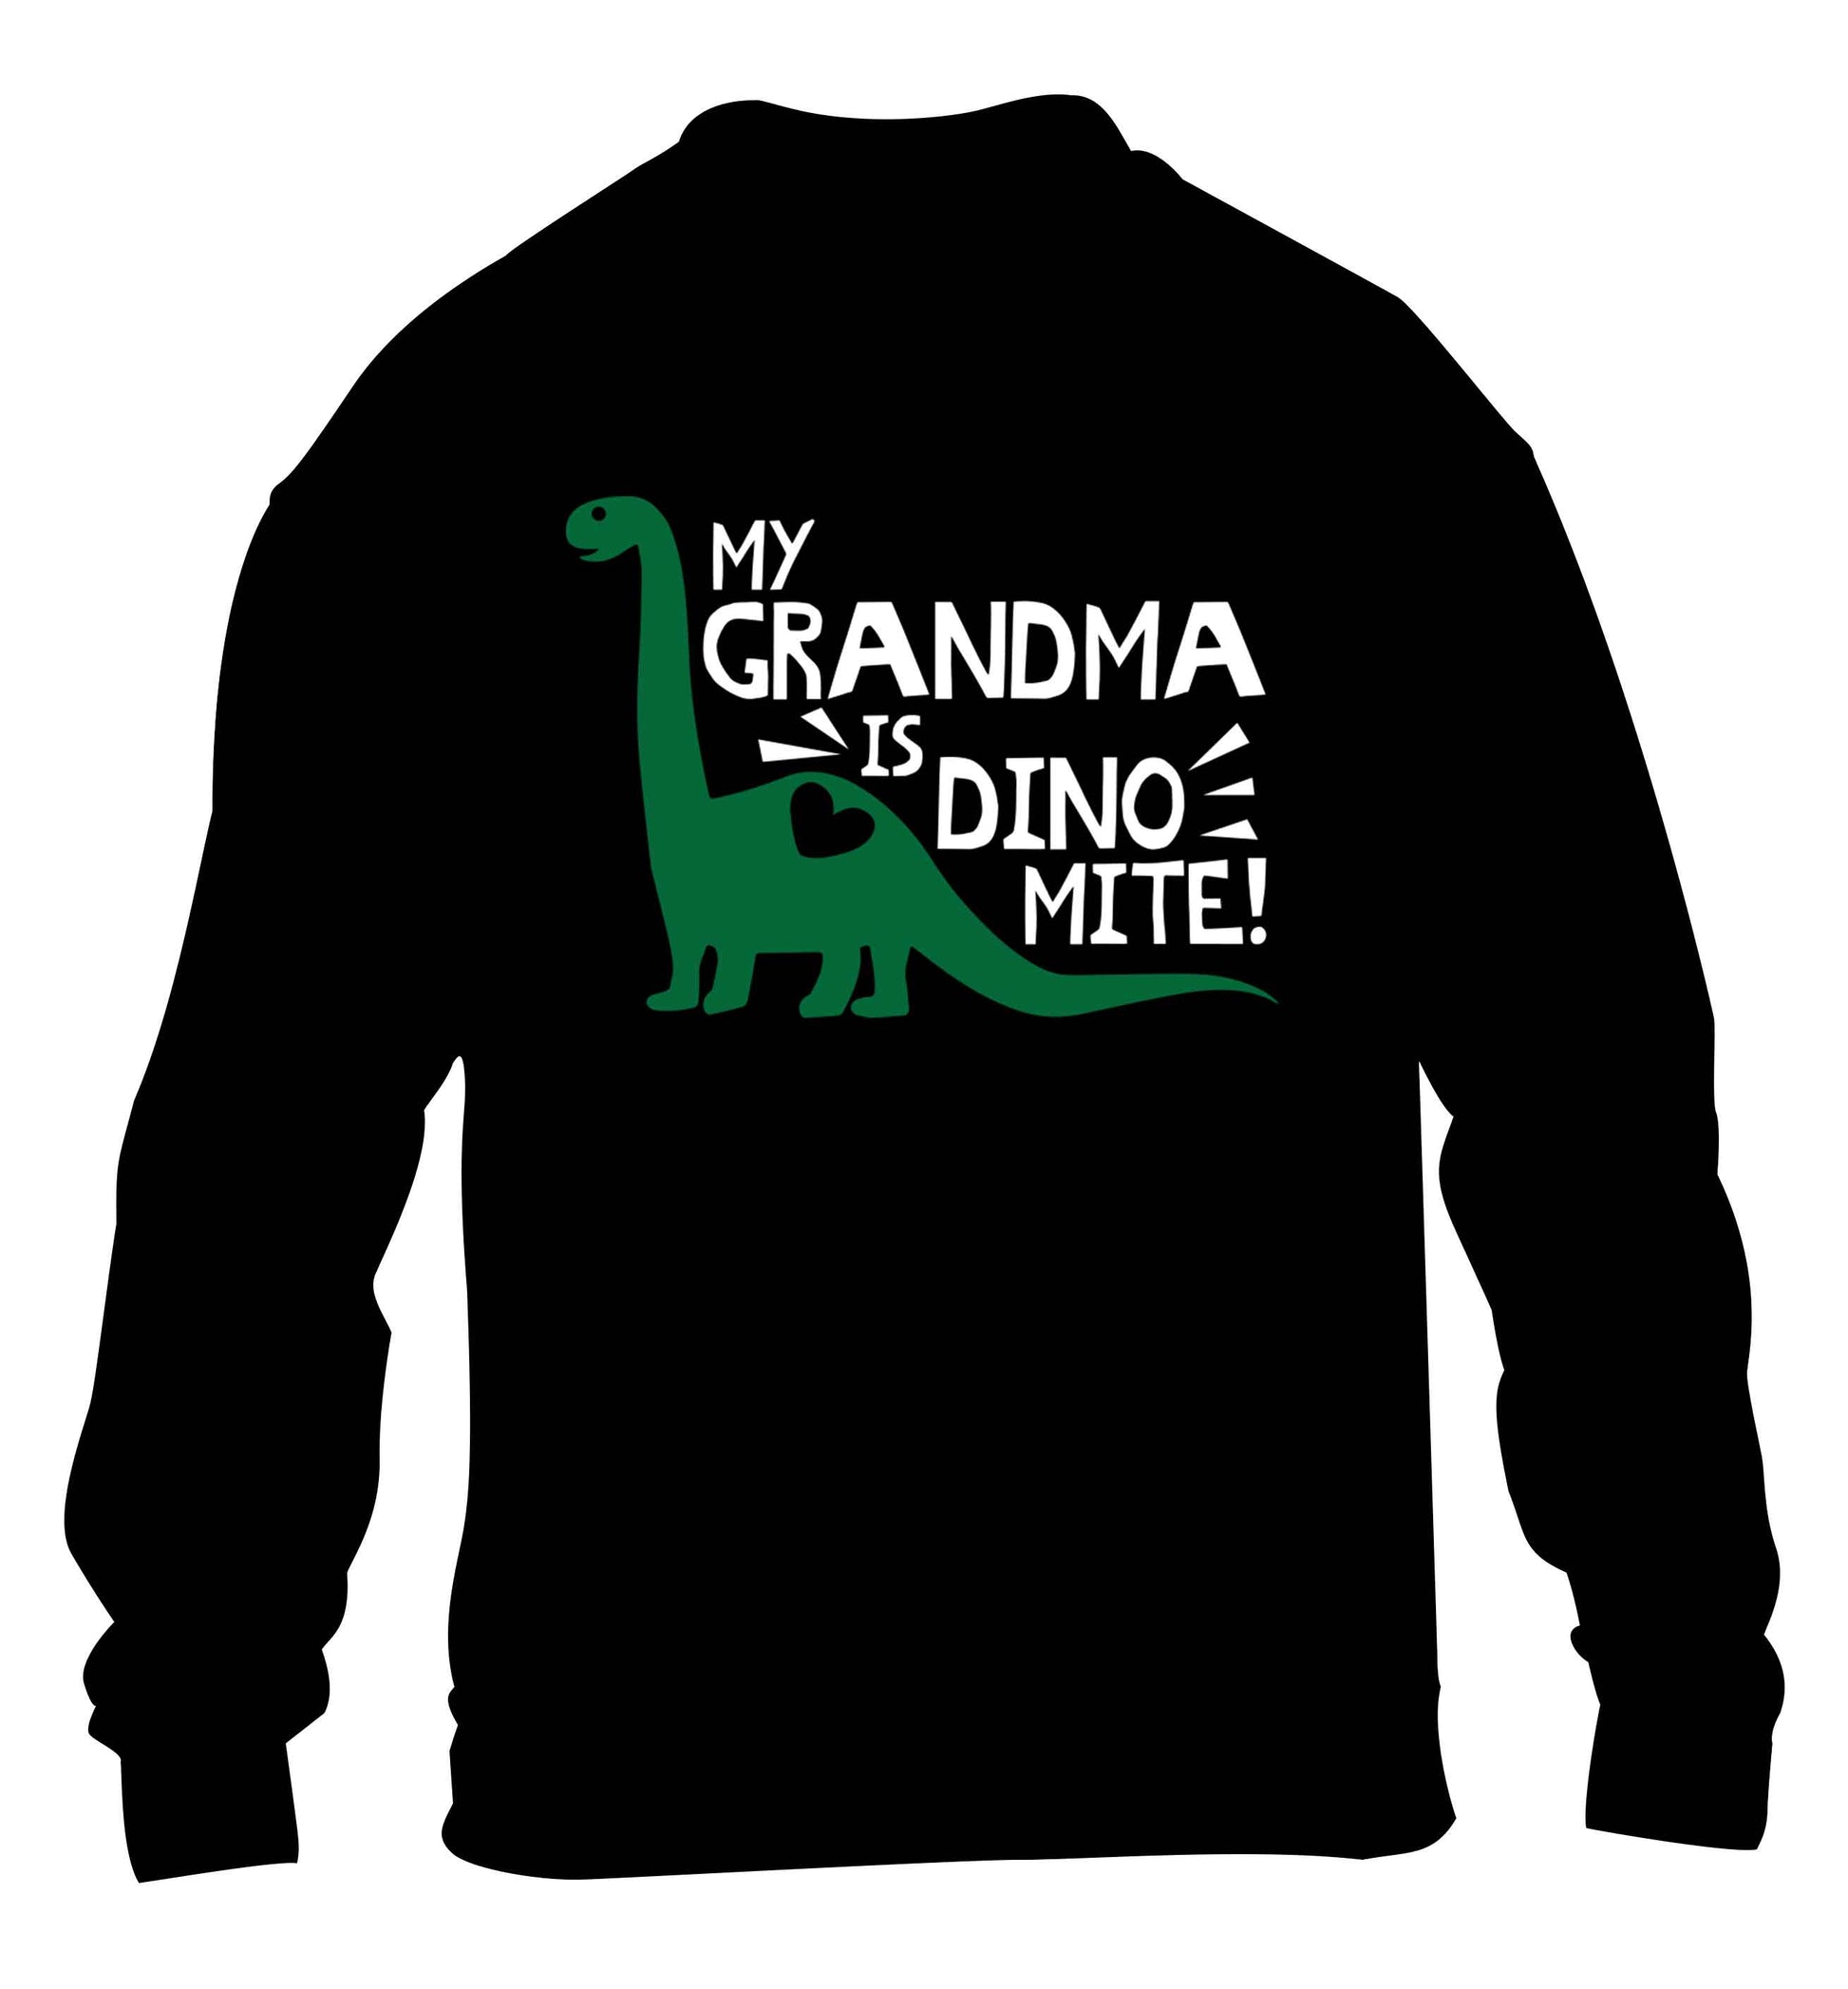 My grandma is dinomite! children's black sweater 12-13 Years